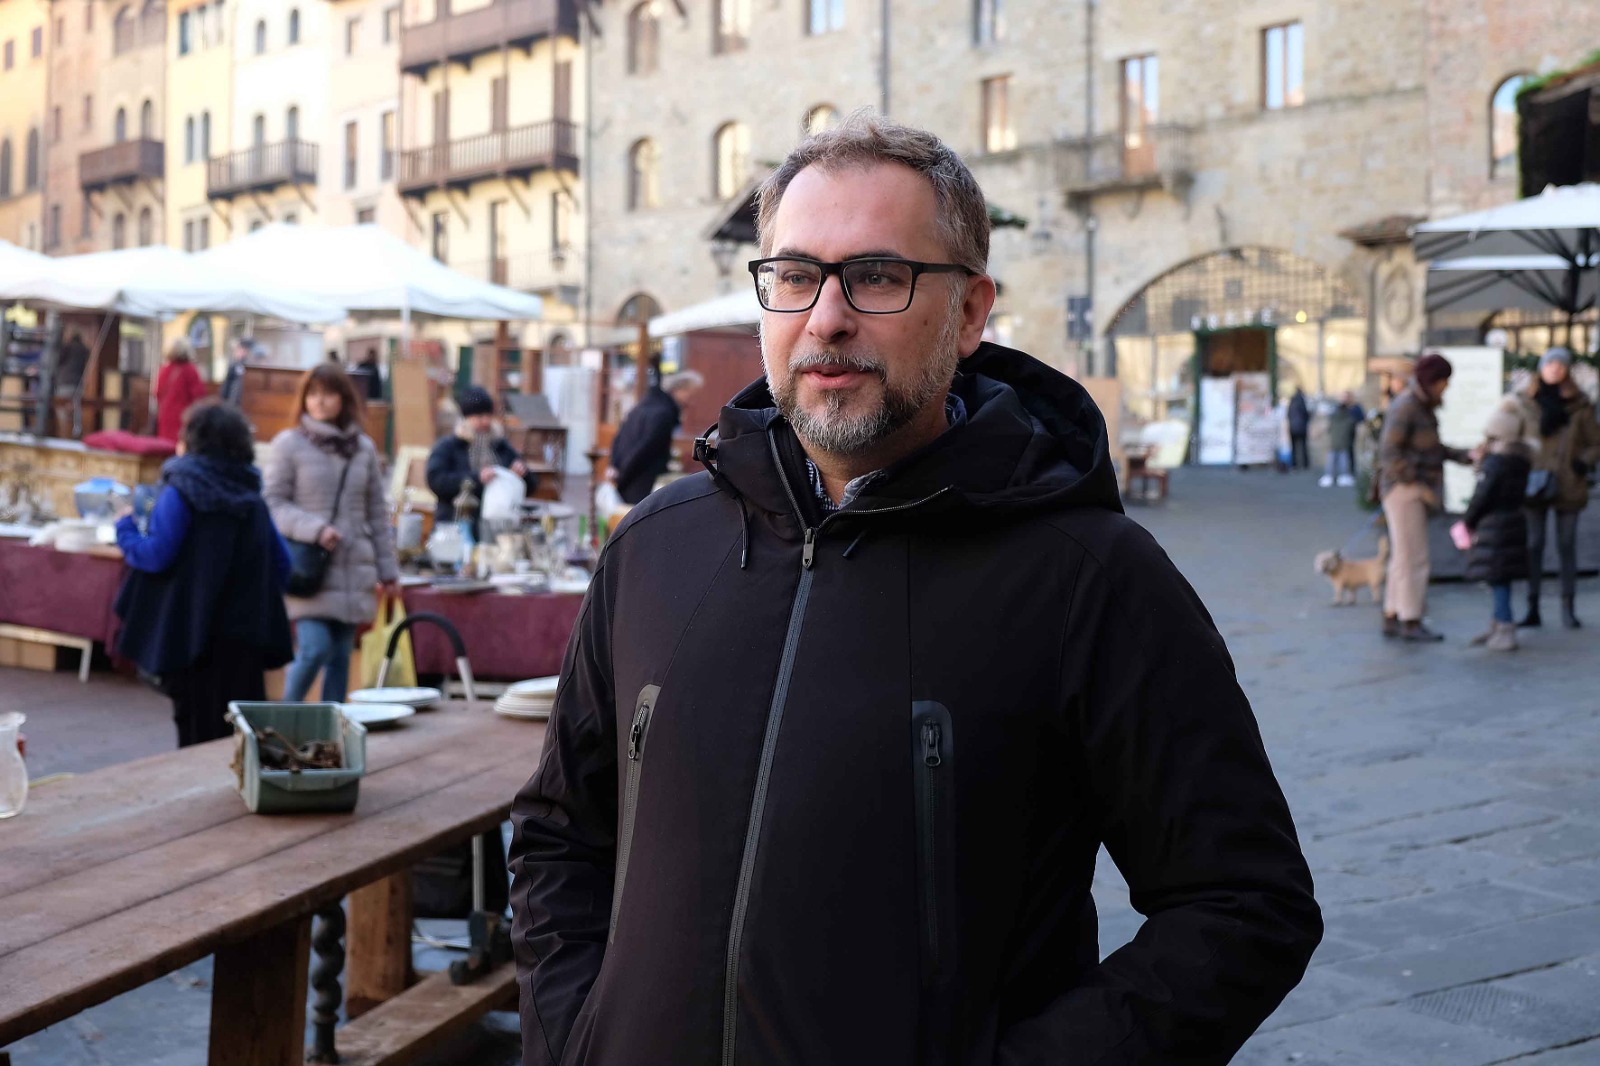 Restart: il turismo ad Arezzo guarda al futuro con ottimismo